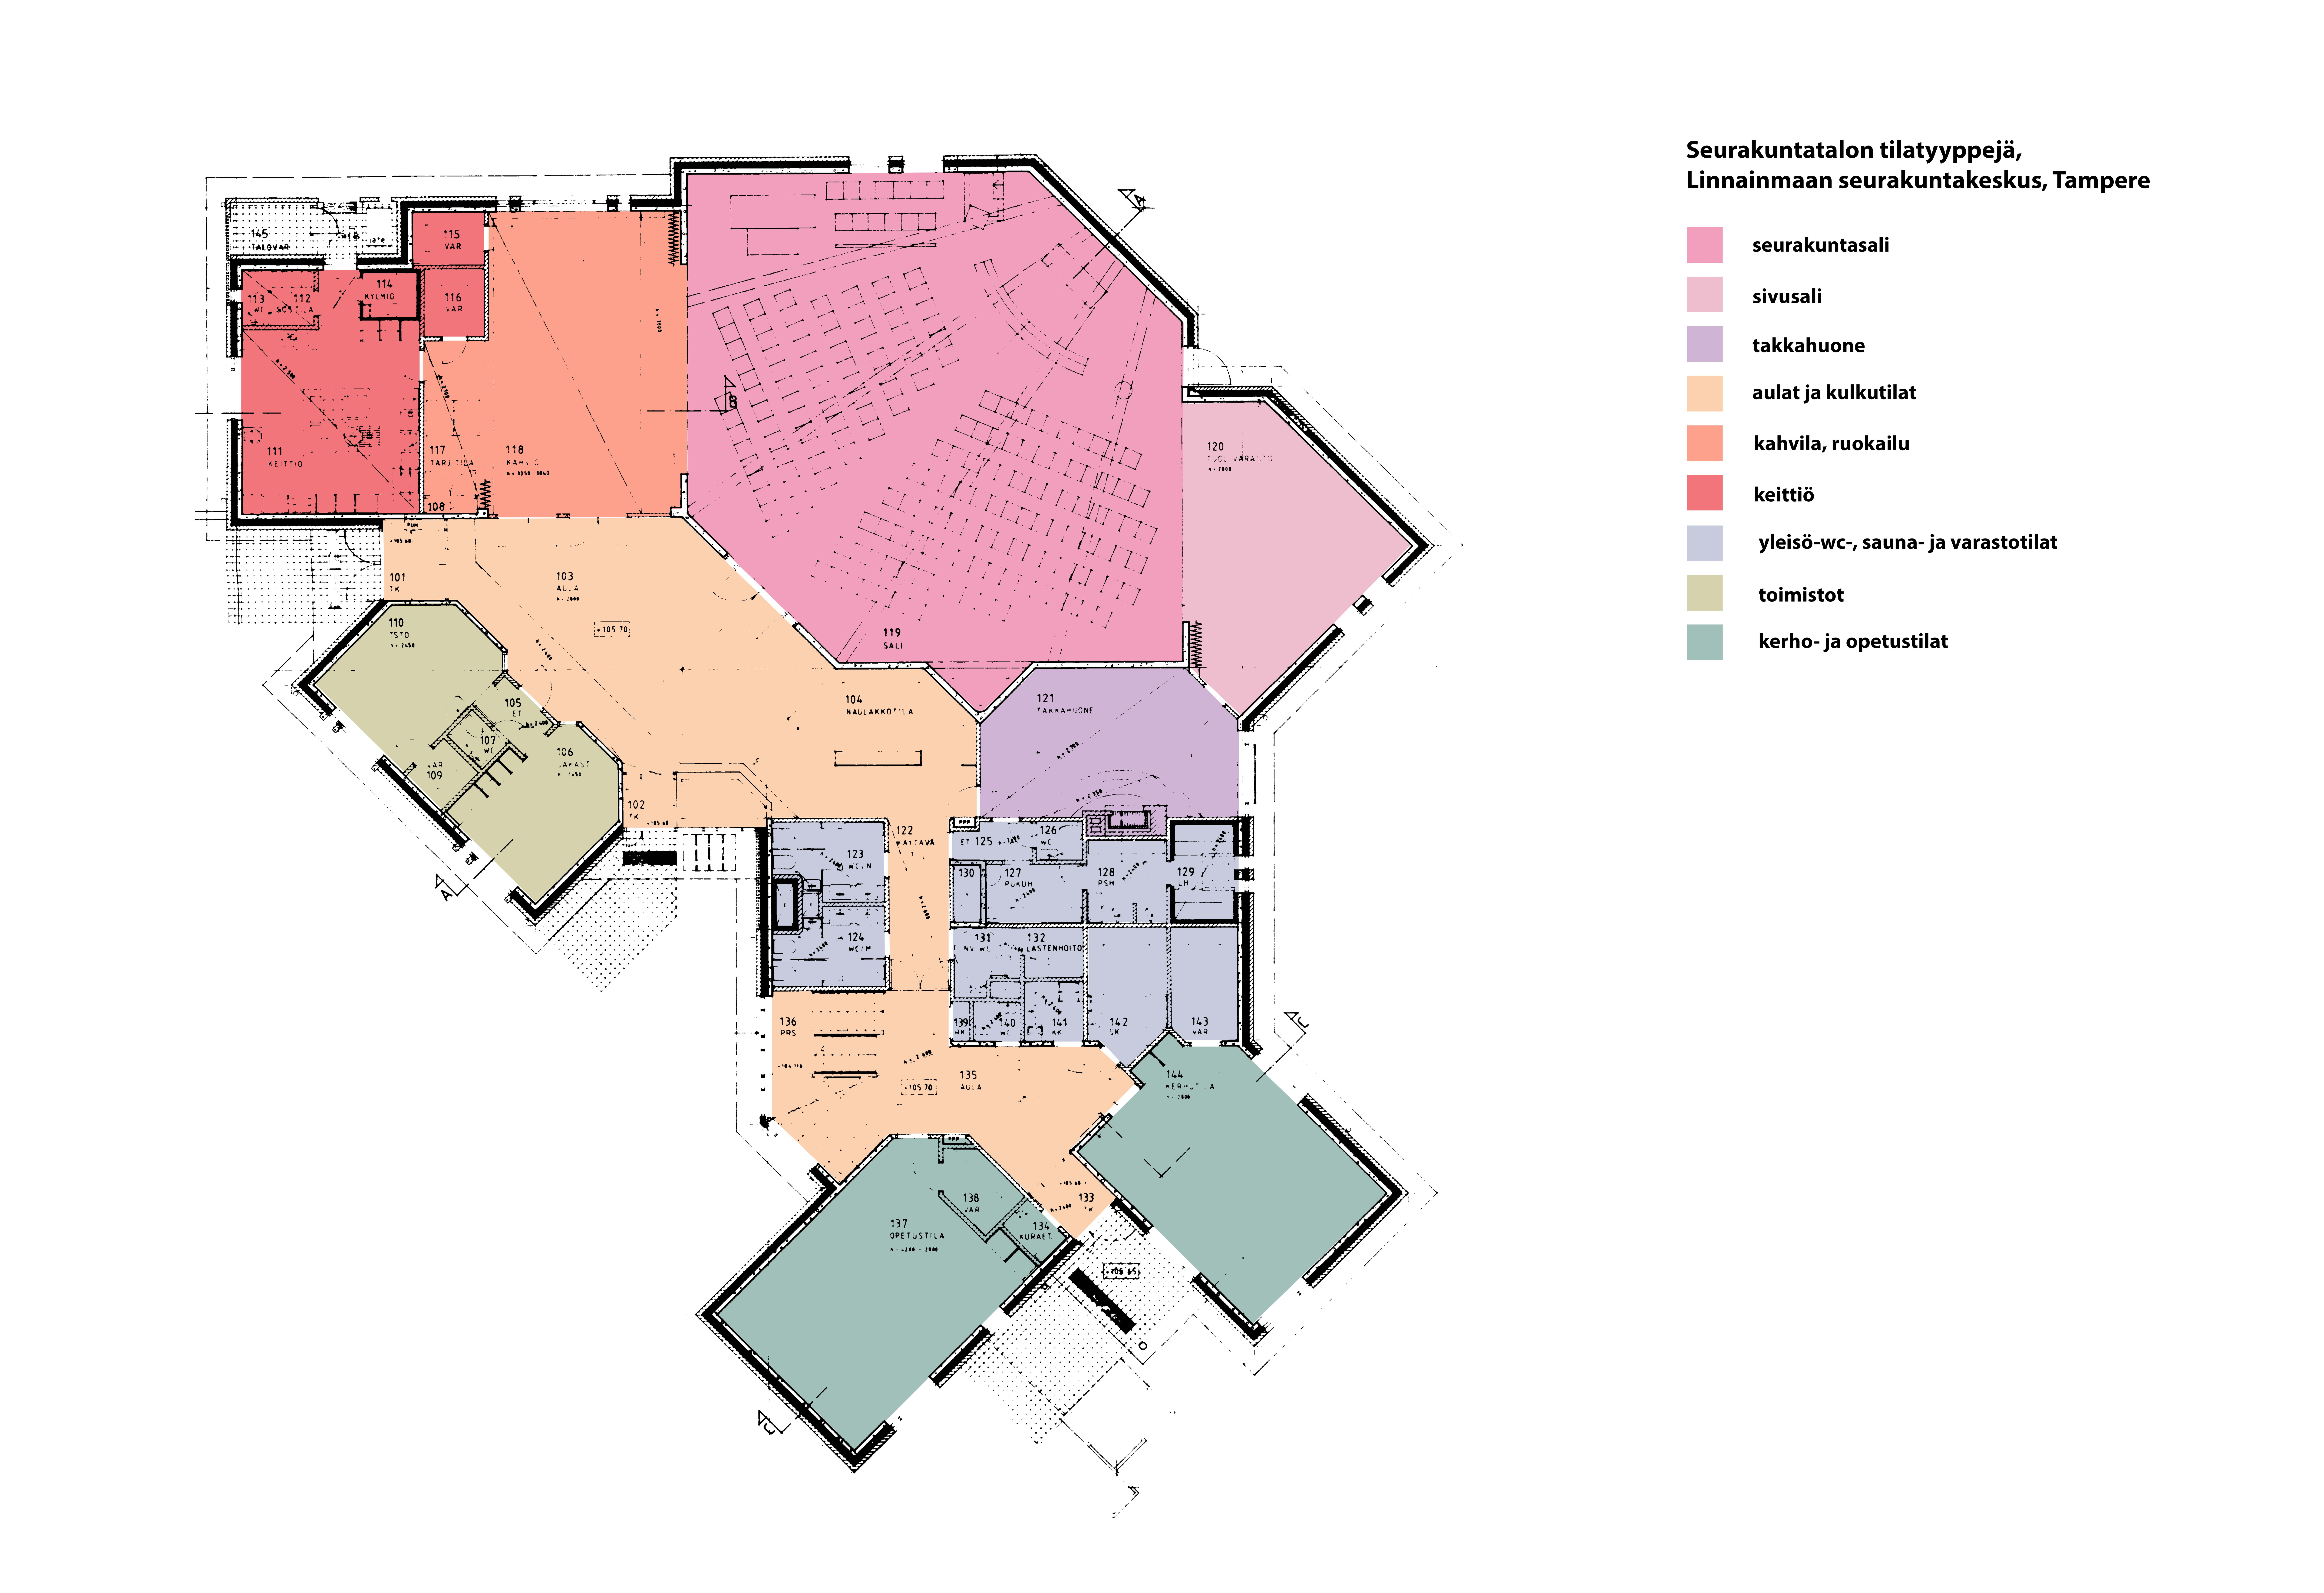 Pohjapiirustuskaavio, johon on merkitty eri värisävyin rakennuksen tilatyyppejä. Pinkki= seurakuntasali, vaaleanpunainen=sivusali, violetti=takkahuone, keltainen=aulat ja kulkutilat, oranssi=kahvila, ruokailu, siniharmaa=yleisö-wc, sauna- ja varastotilat, vaaleanvihreä= toimistot ja tummanvihreä=kerho- ja opetustilat.